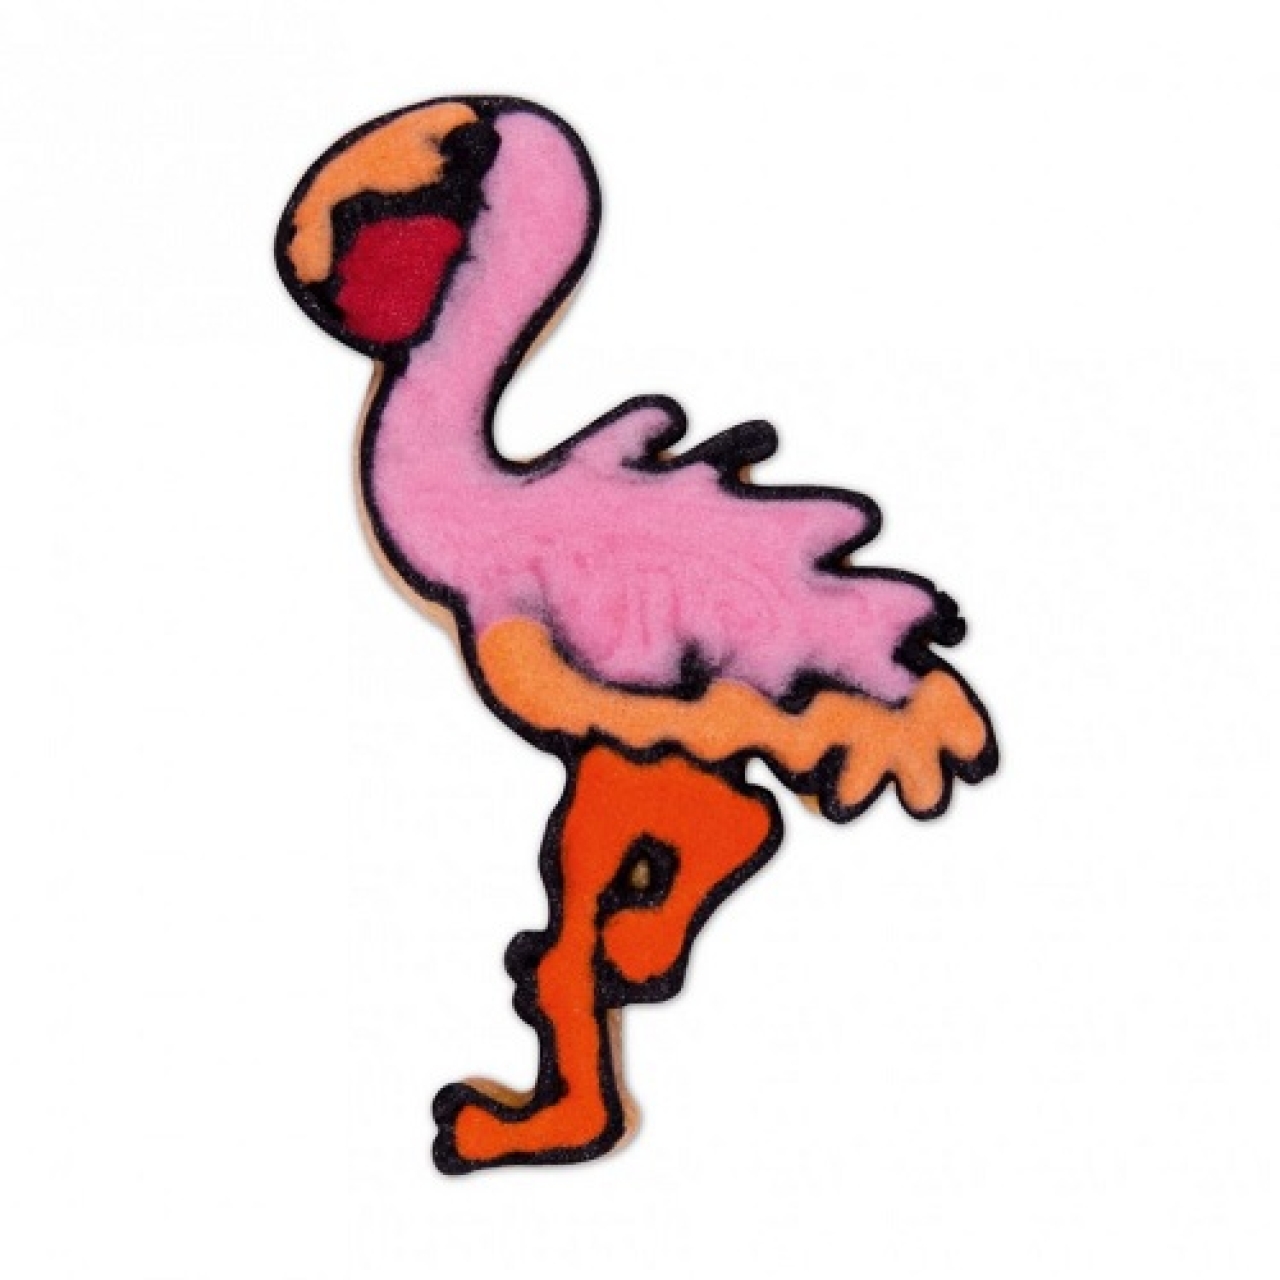 Plätzchen Ausstecher "Flamingo", Edelstahl, 7 cm